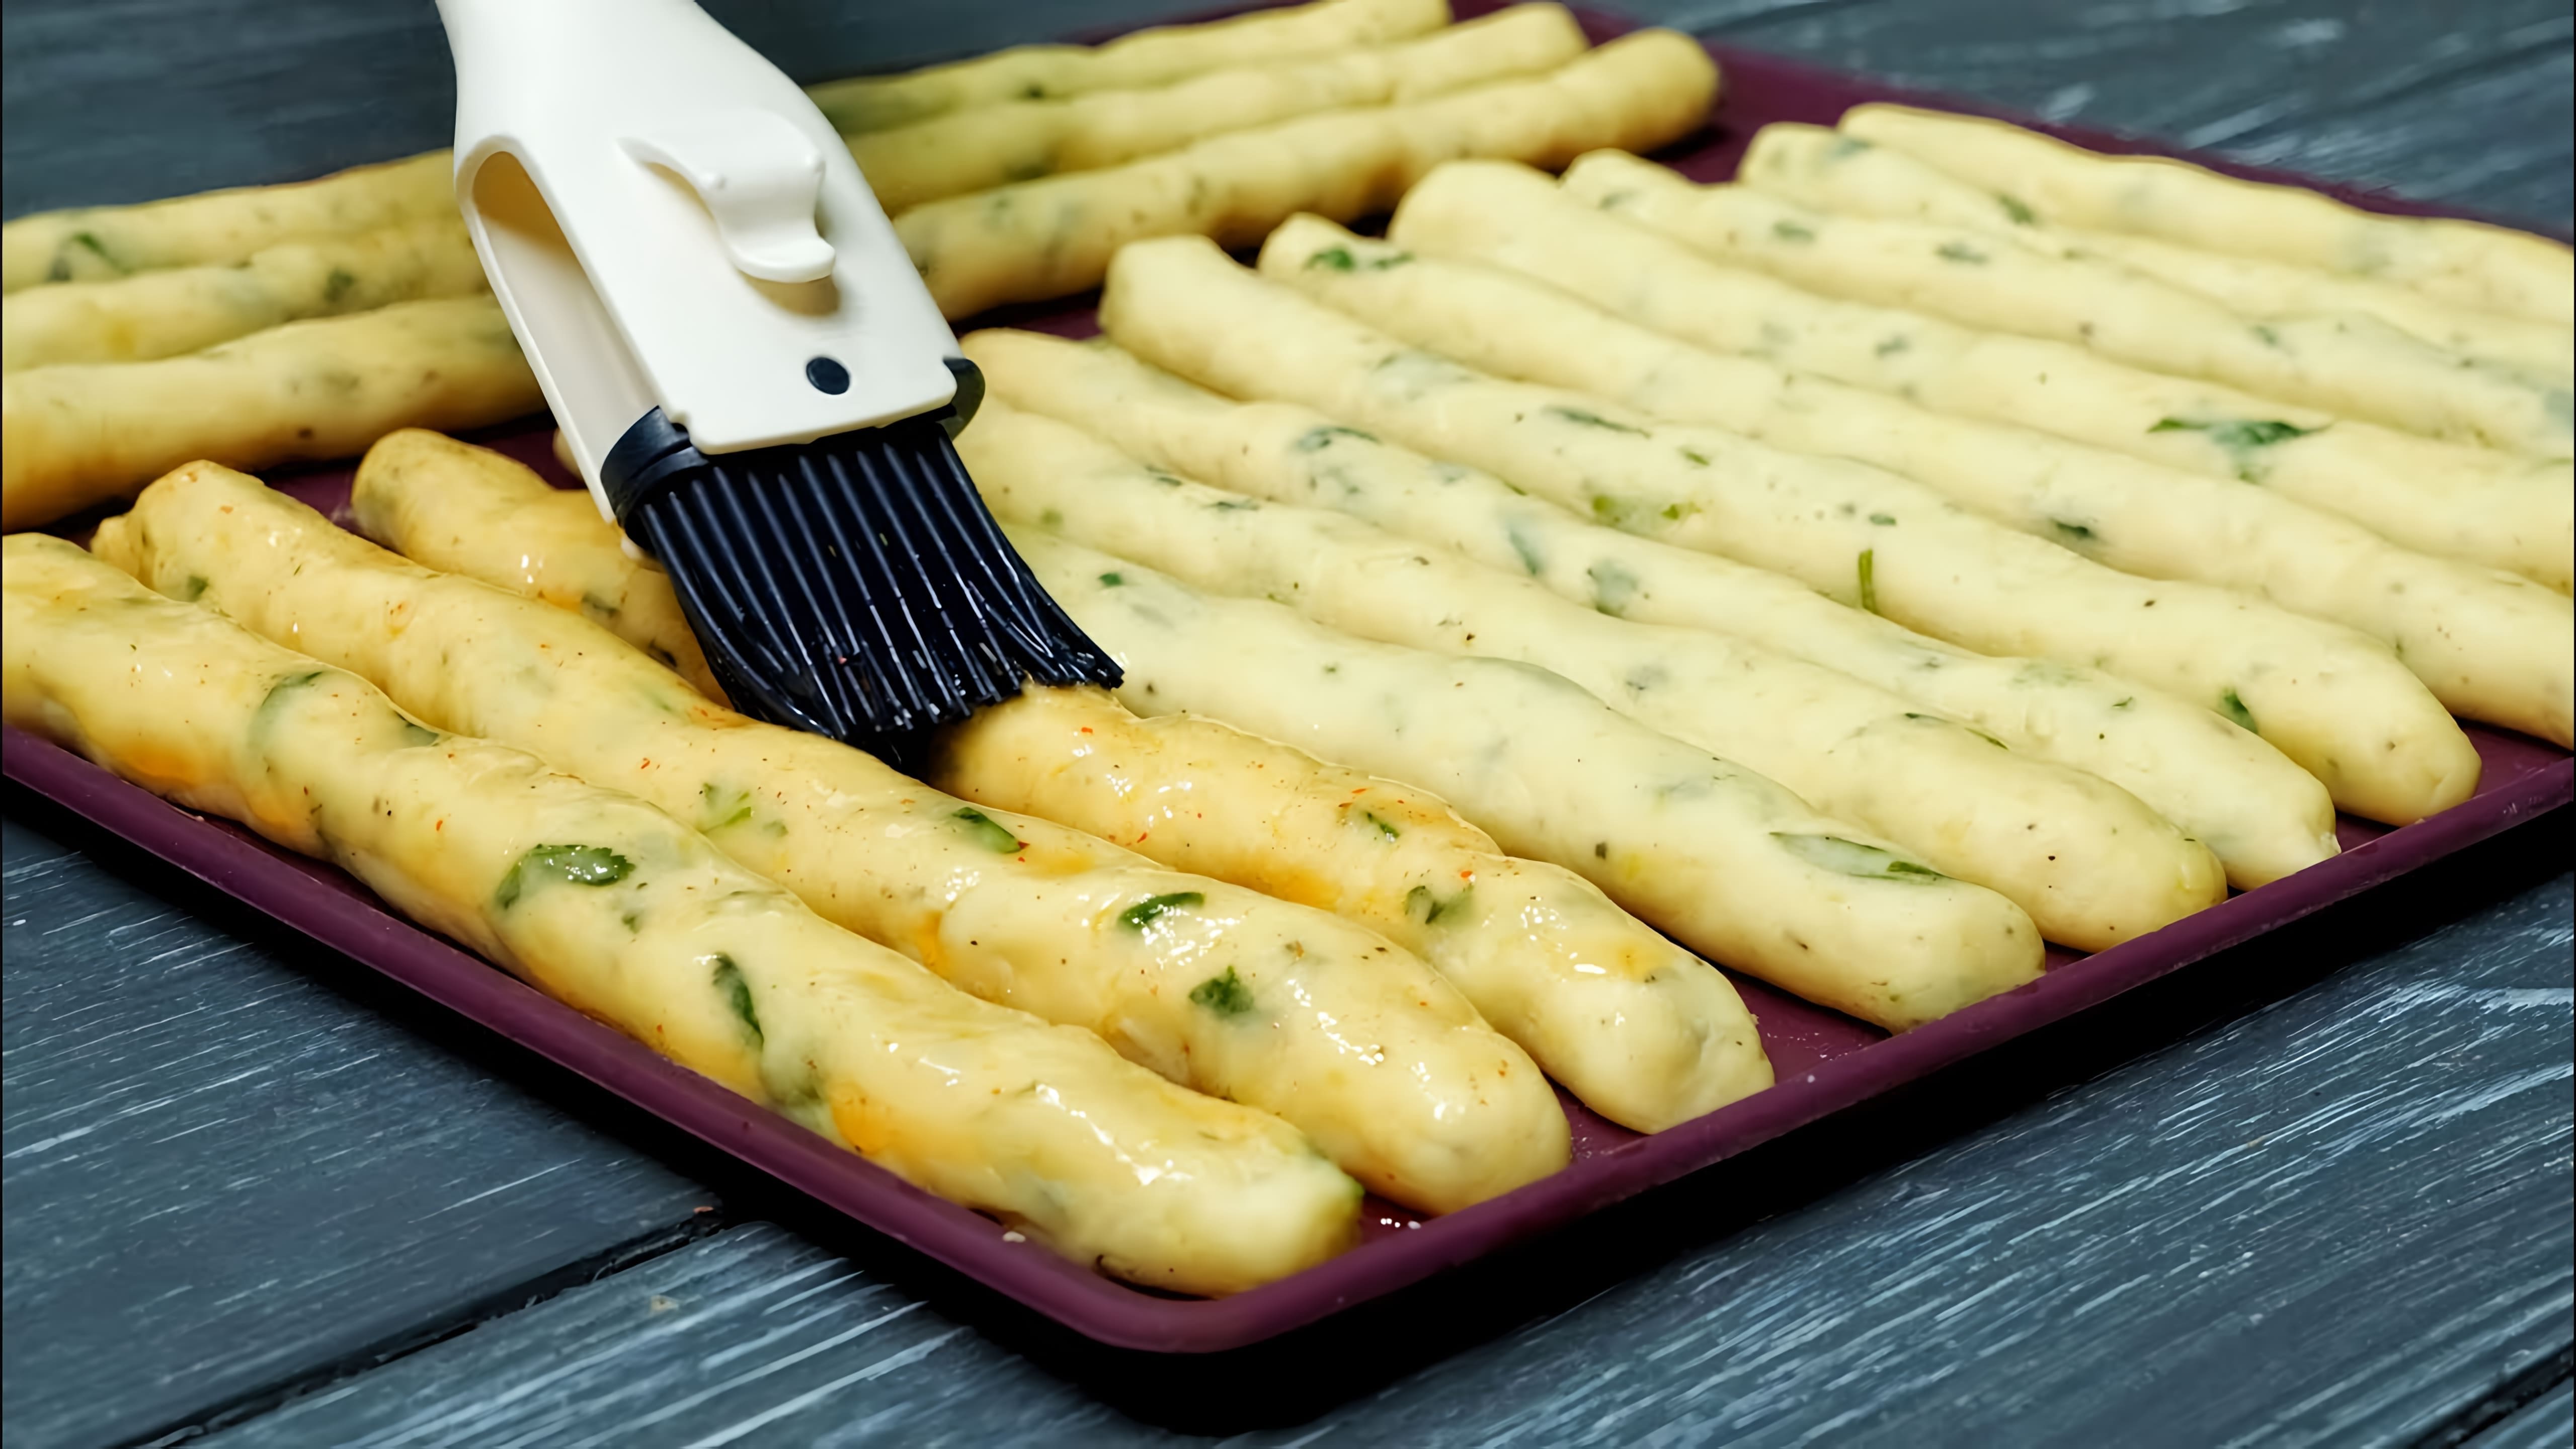 В этом видео демонстрируется рецепт приготовления картофельных палочек